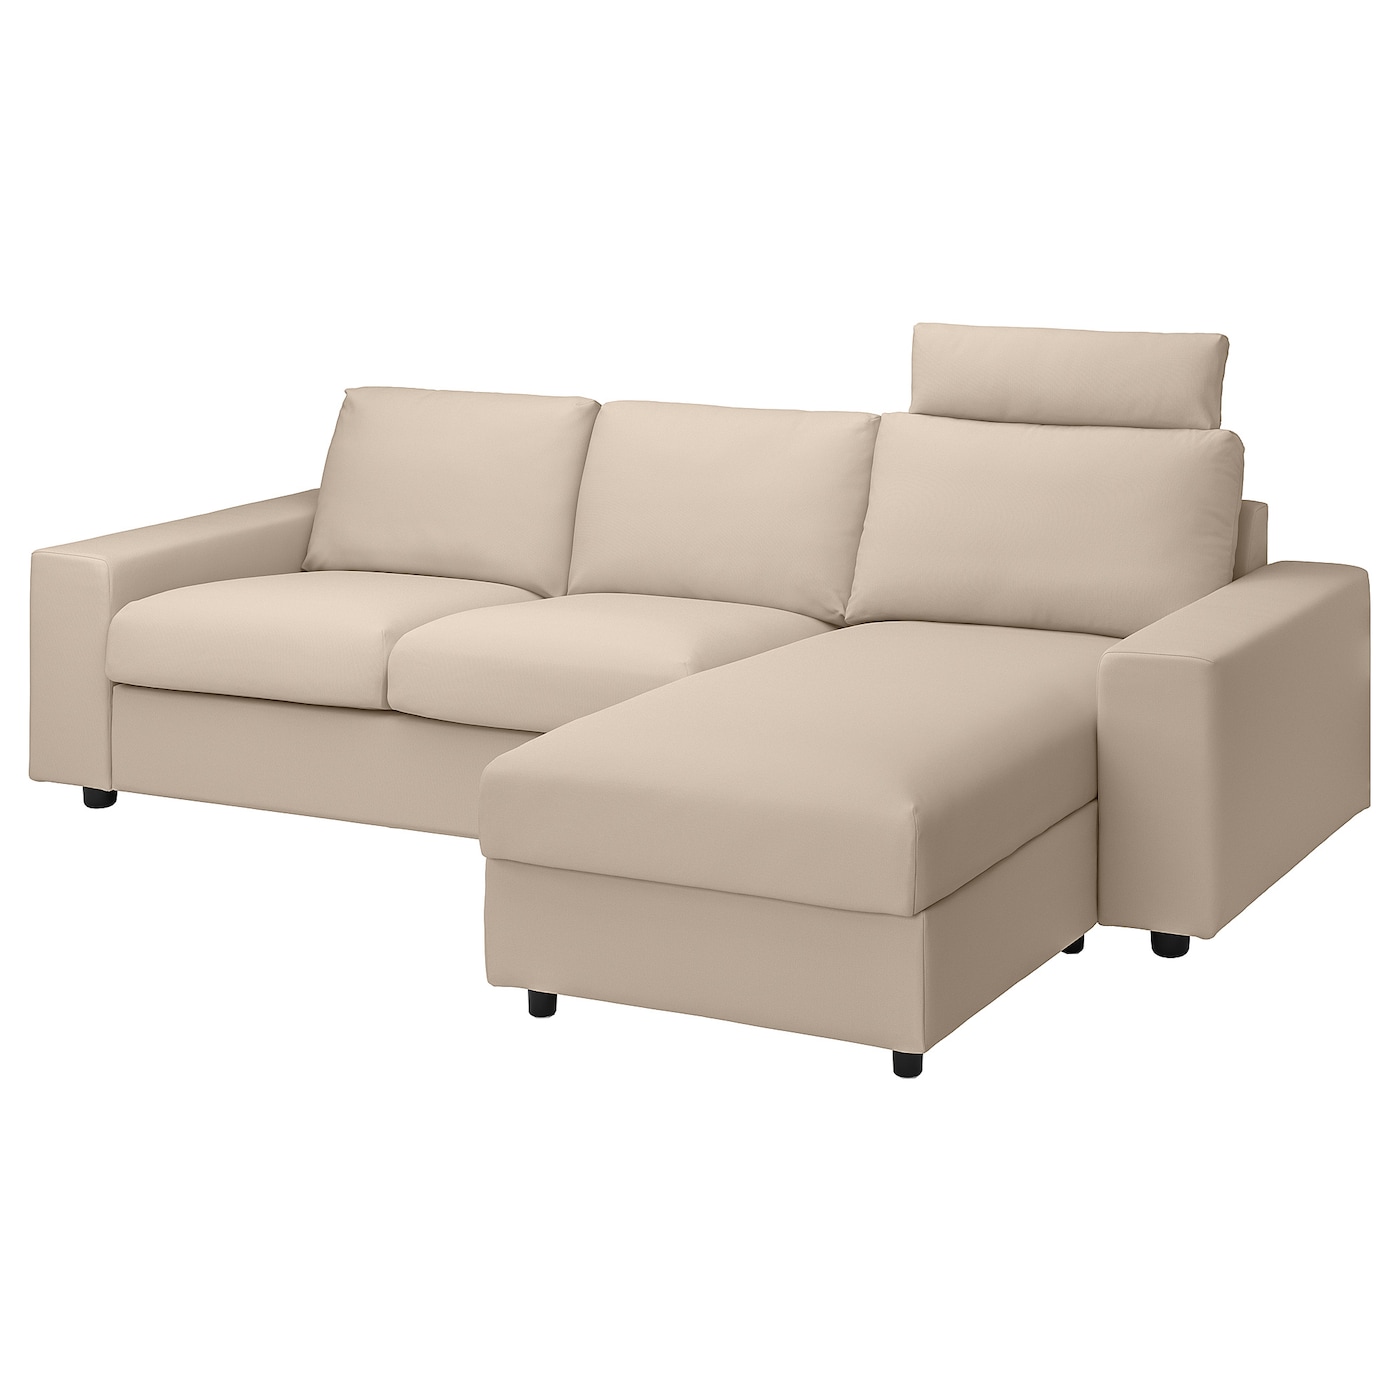 ВИМЛЕ 3-местный диван + диван, с широкими подлокотниками с подголовником/Халларп бежевый VIMLE IKEA